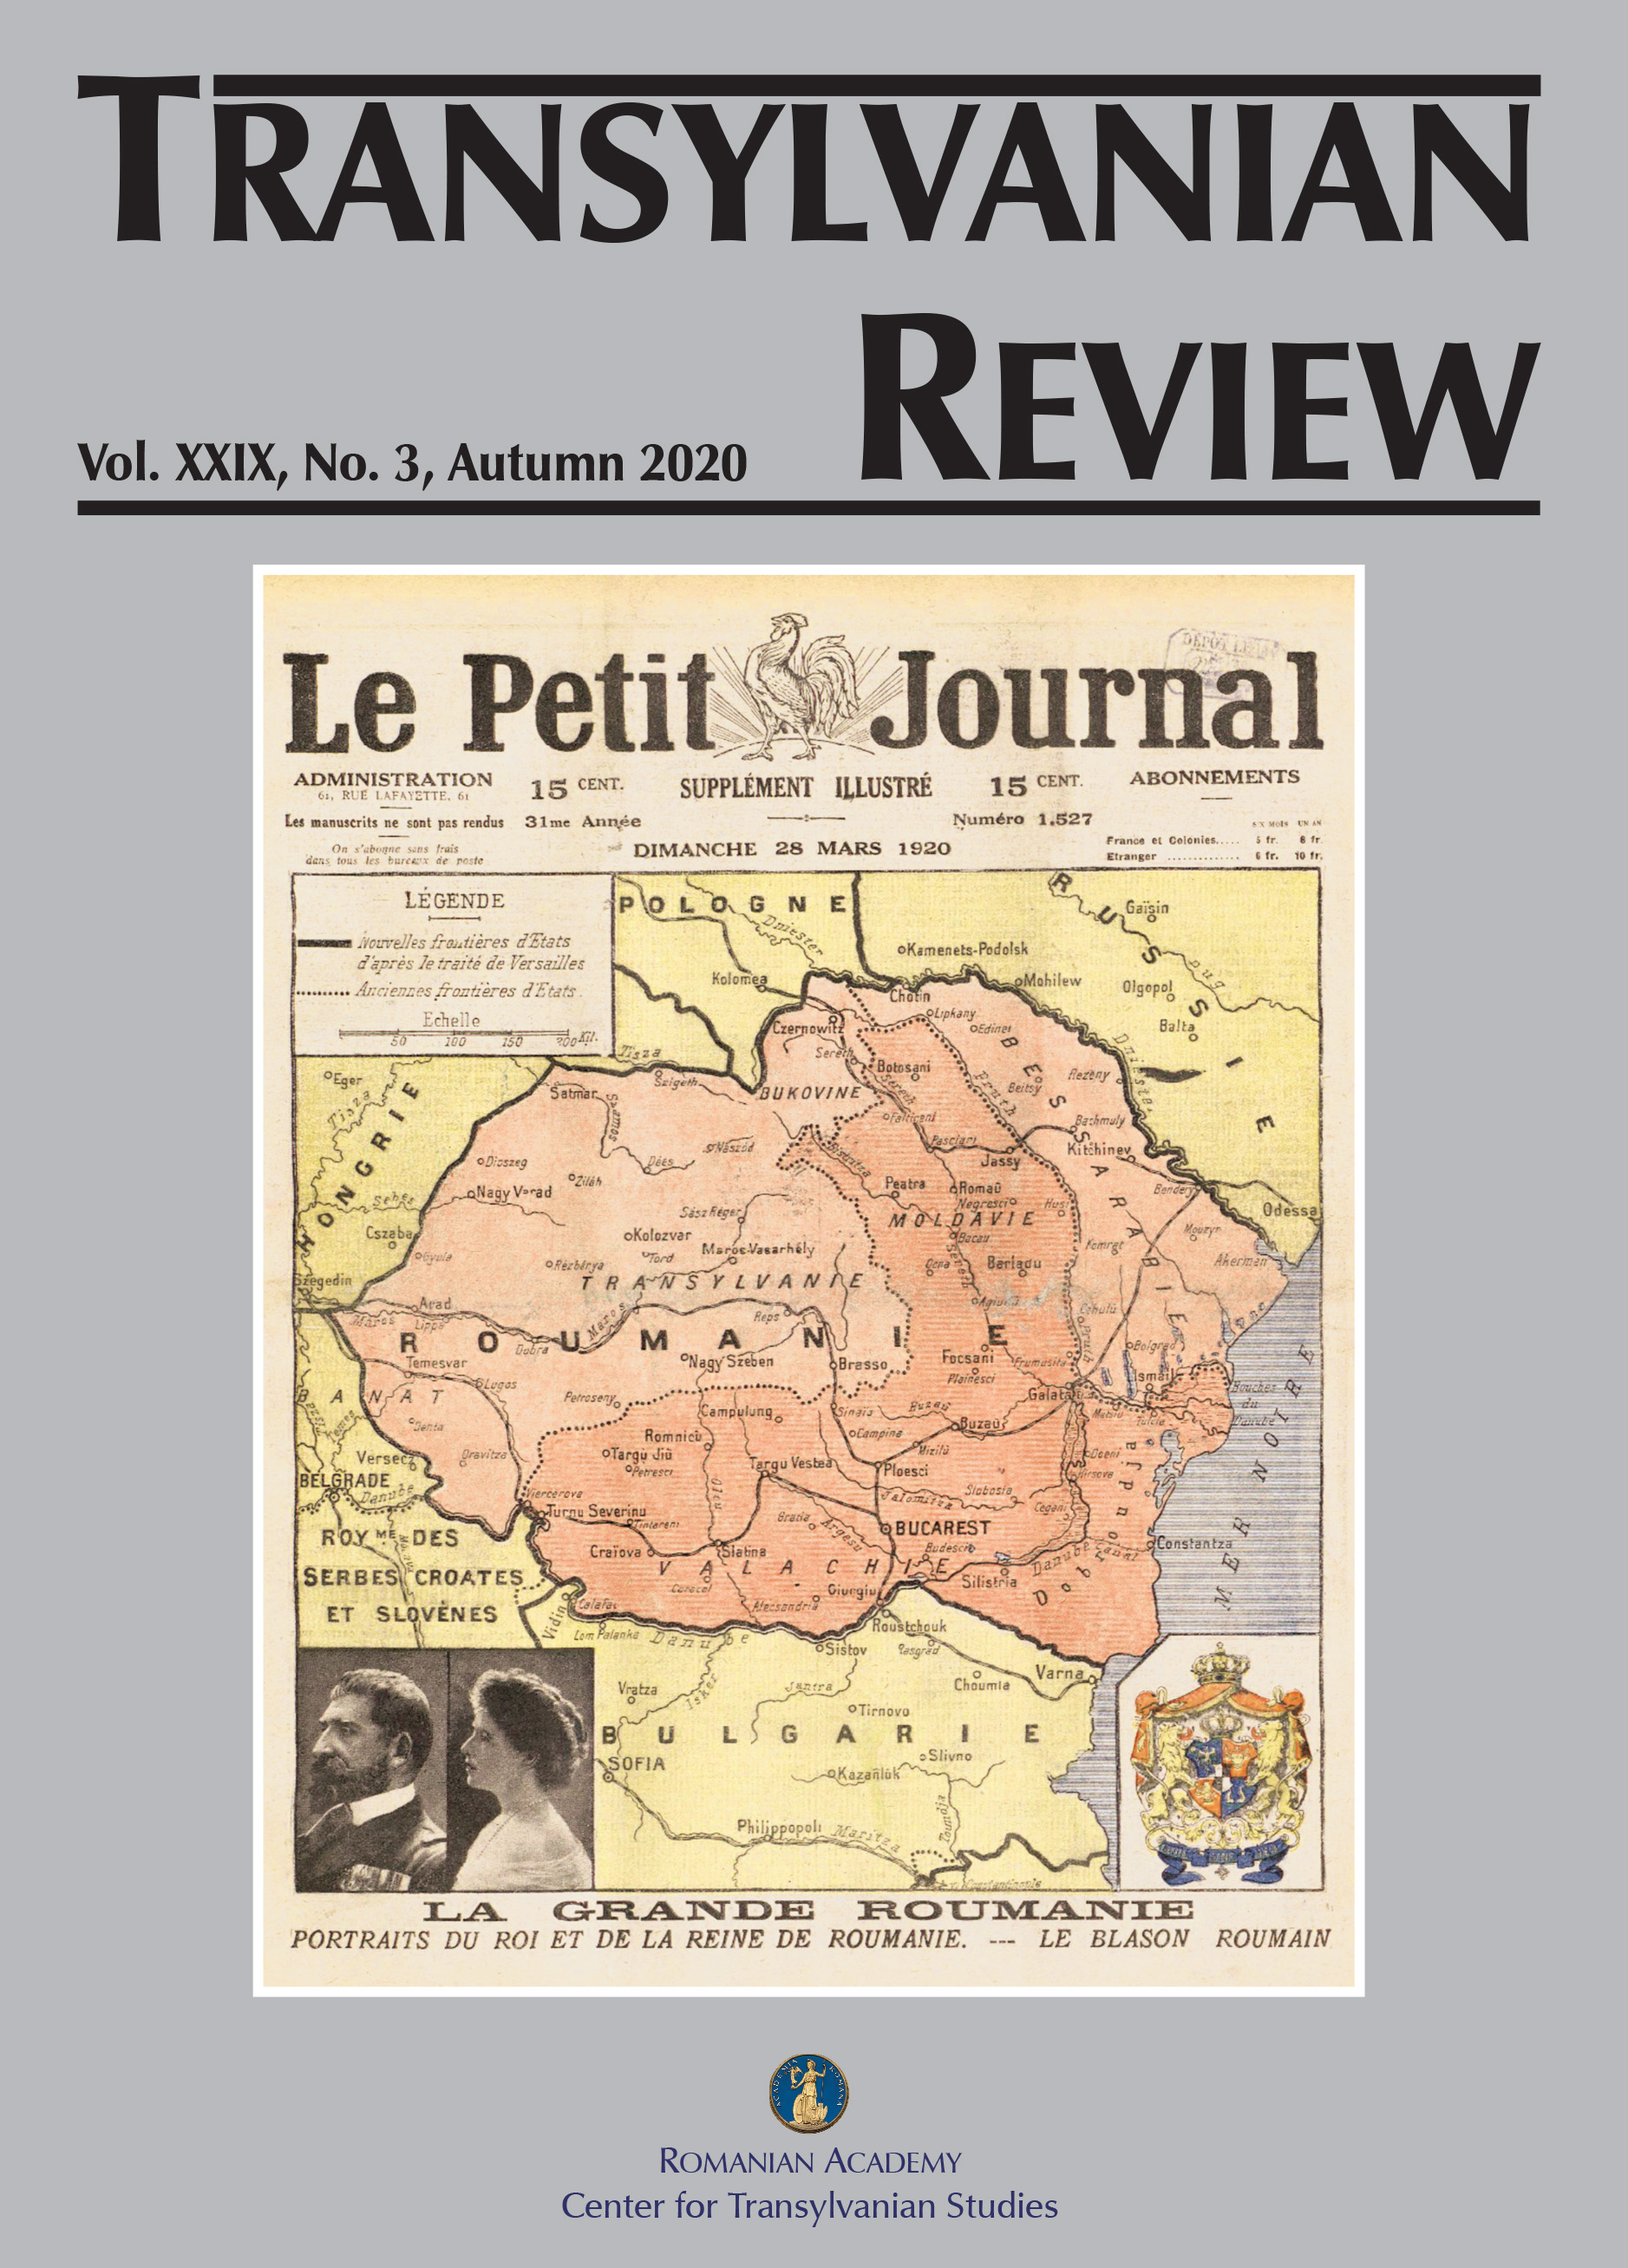 The Treaty of Trianon: History and Politics